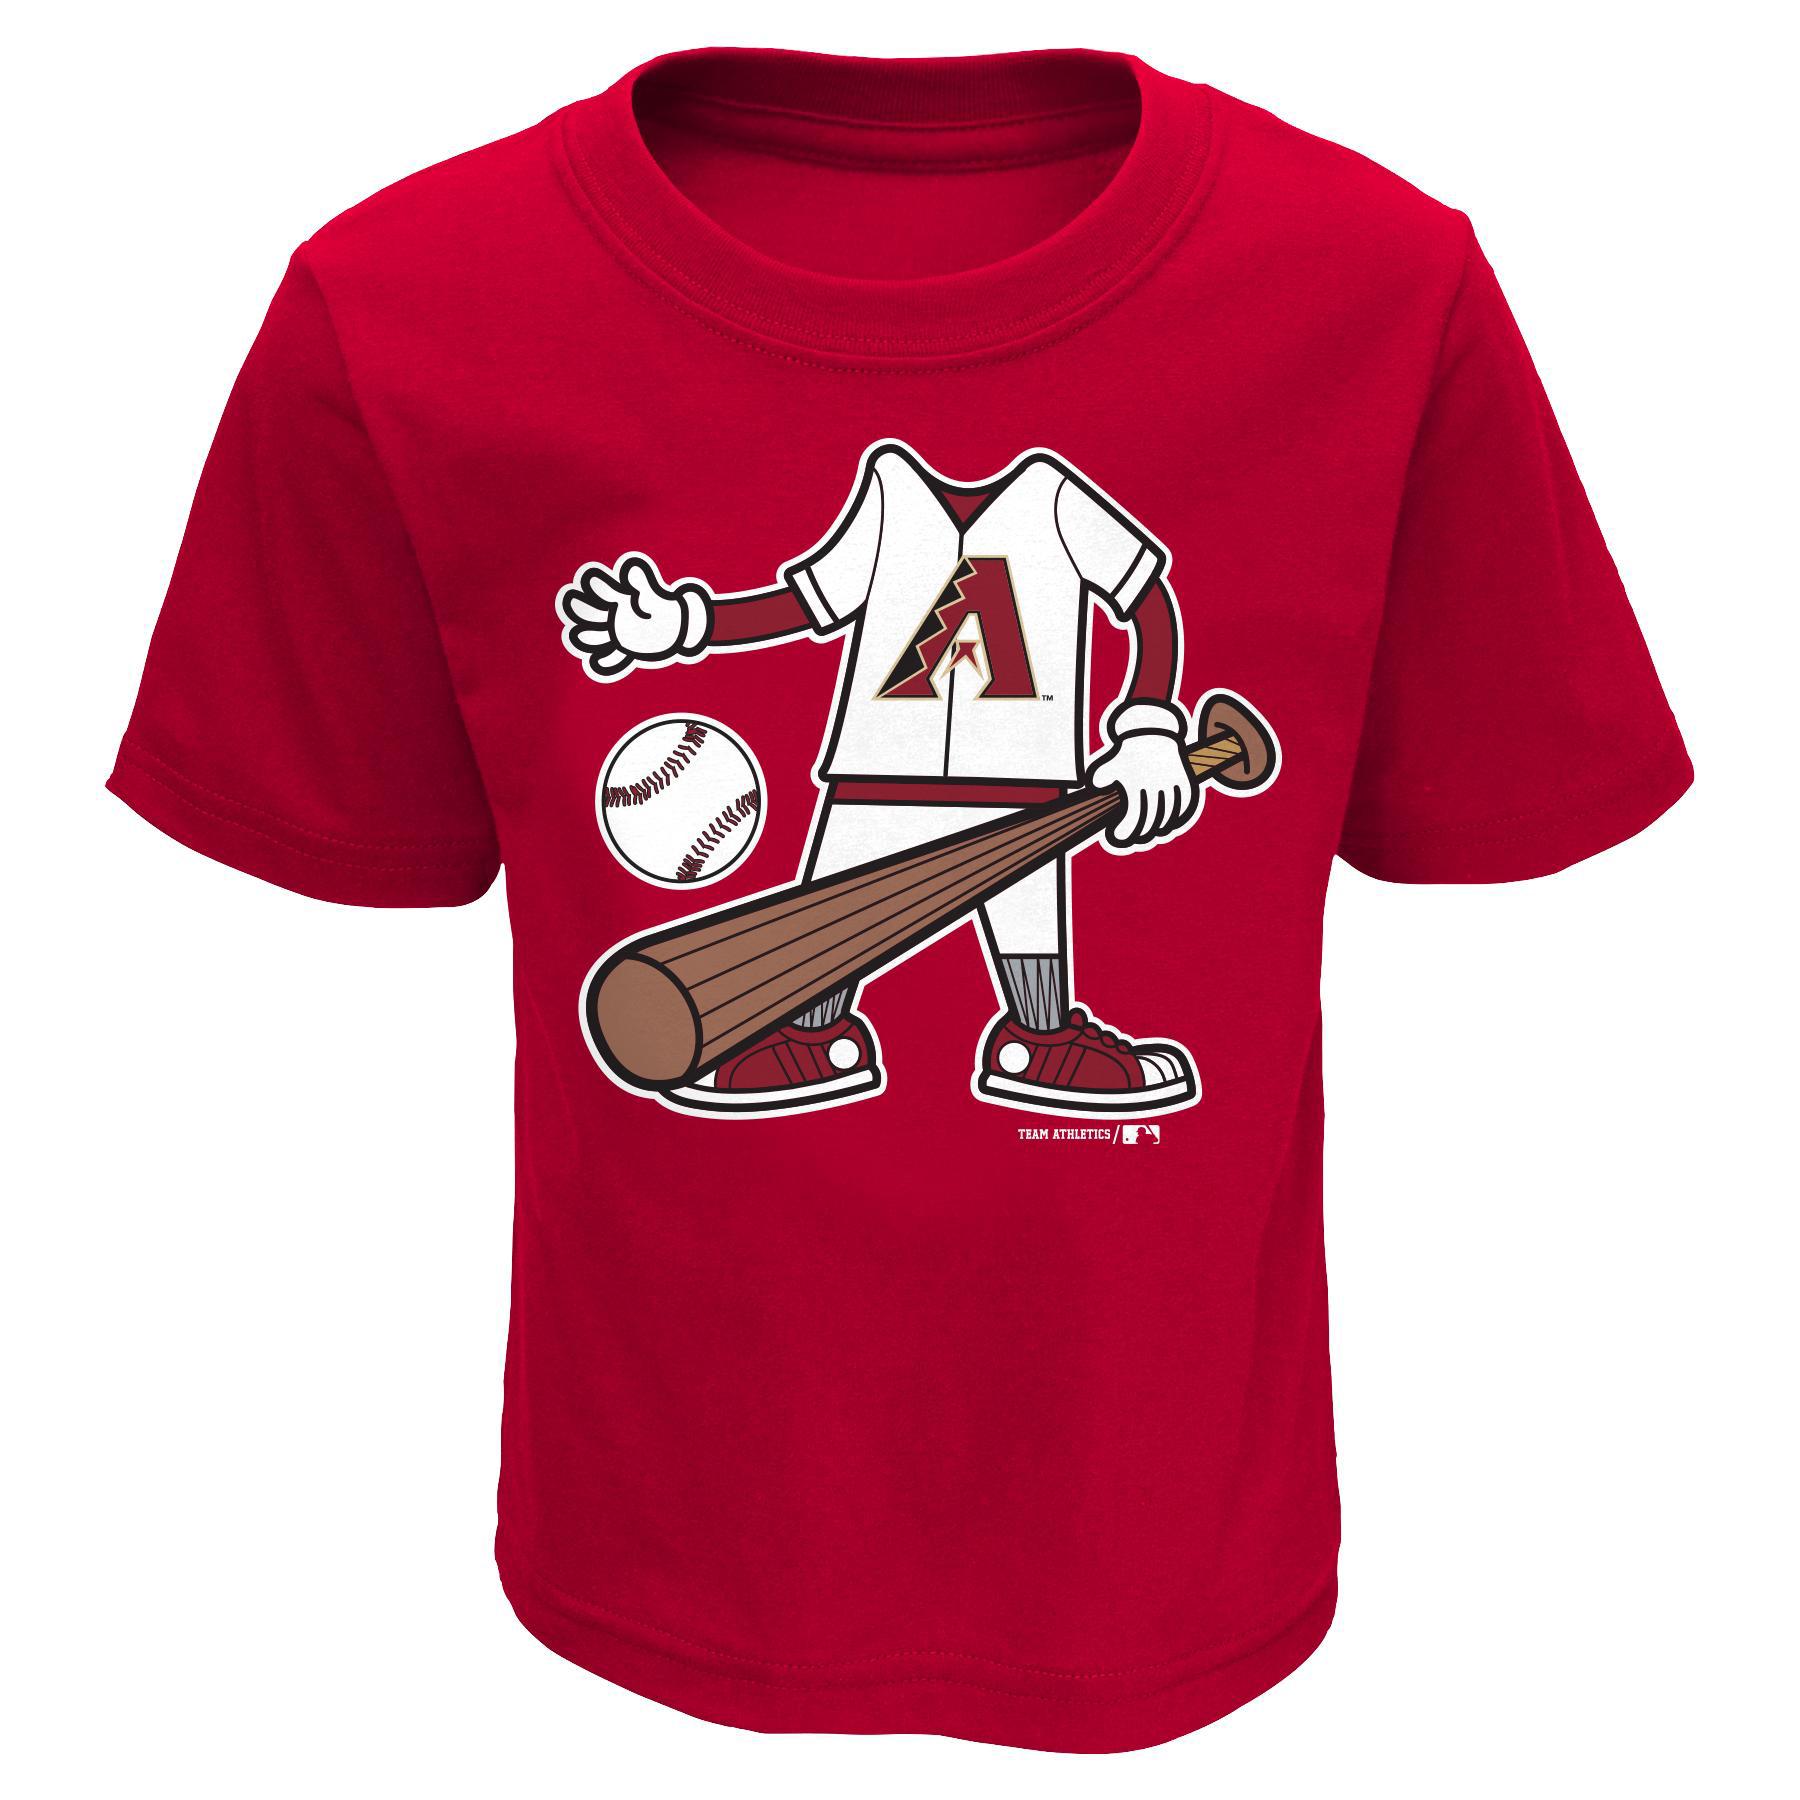 MLB Infant & Toddler Boy's T-Shirt - Arizona Diamondbacks